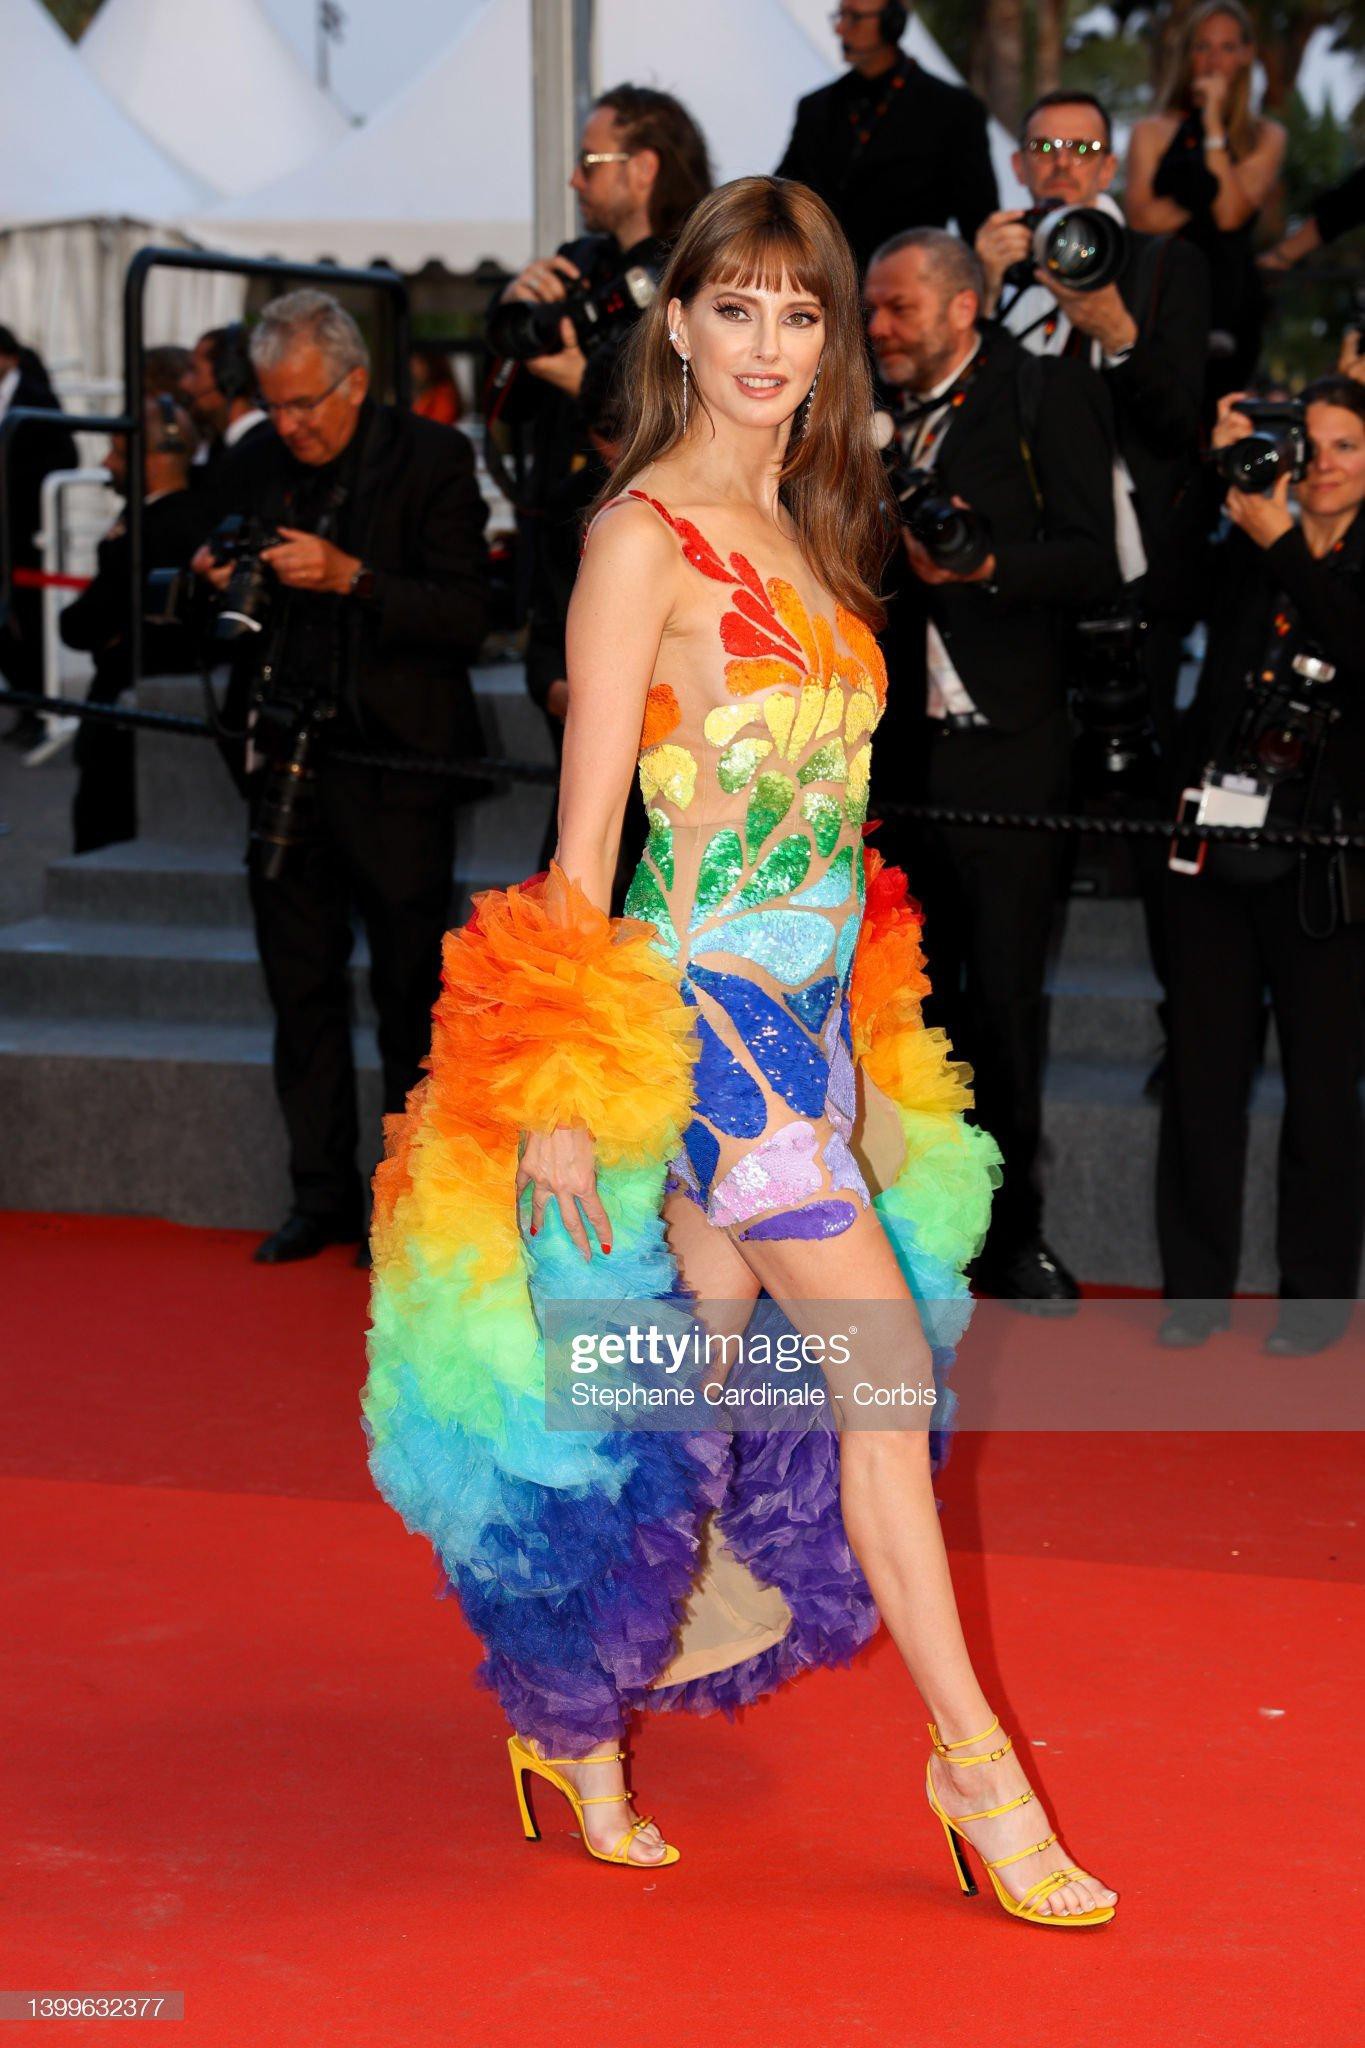 Cannes ngày 11: Hai minh tinh gạo cội khiêu vũ trên thảm đỏ, nữ ca sĩ lộ nội y phản cảm - Ảnh 20.